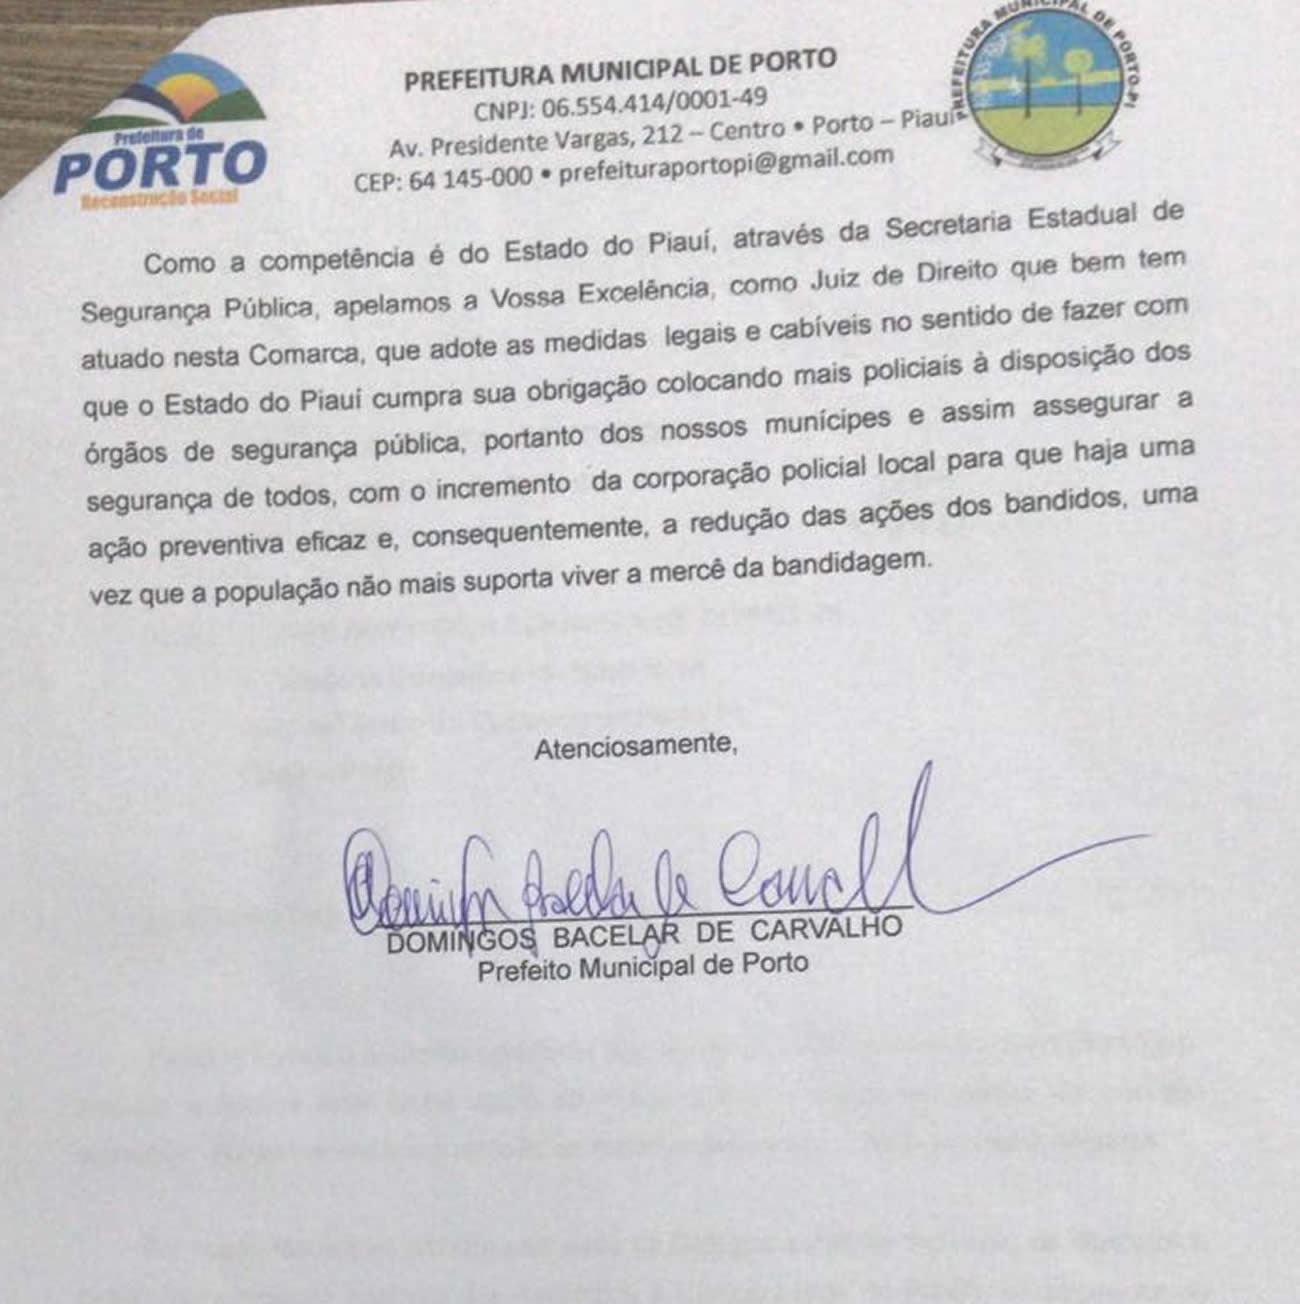 Ofício enviado ao juiz Ulysses Gonçalves da Silva Neto